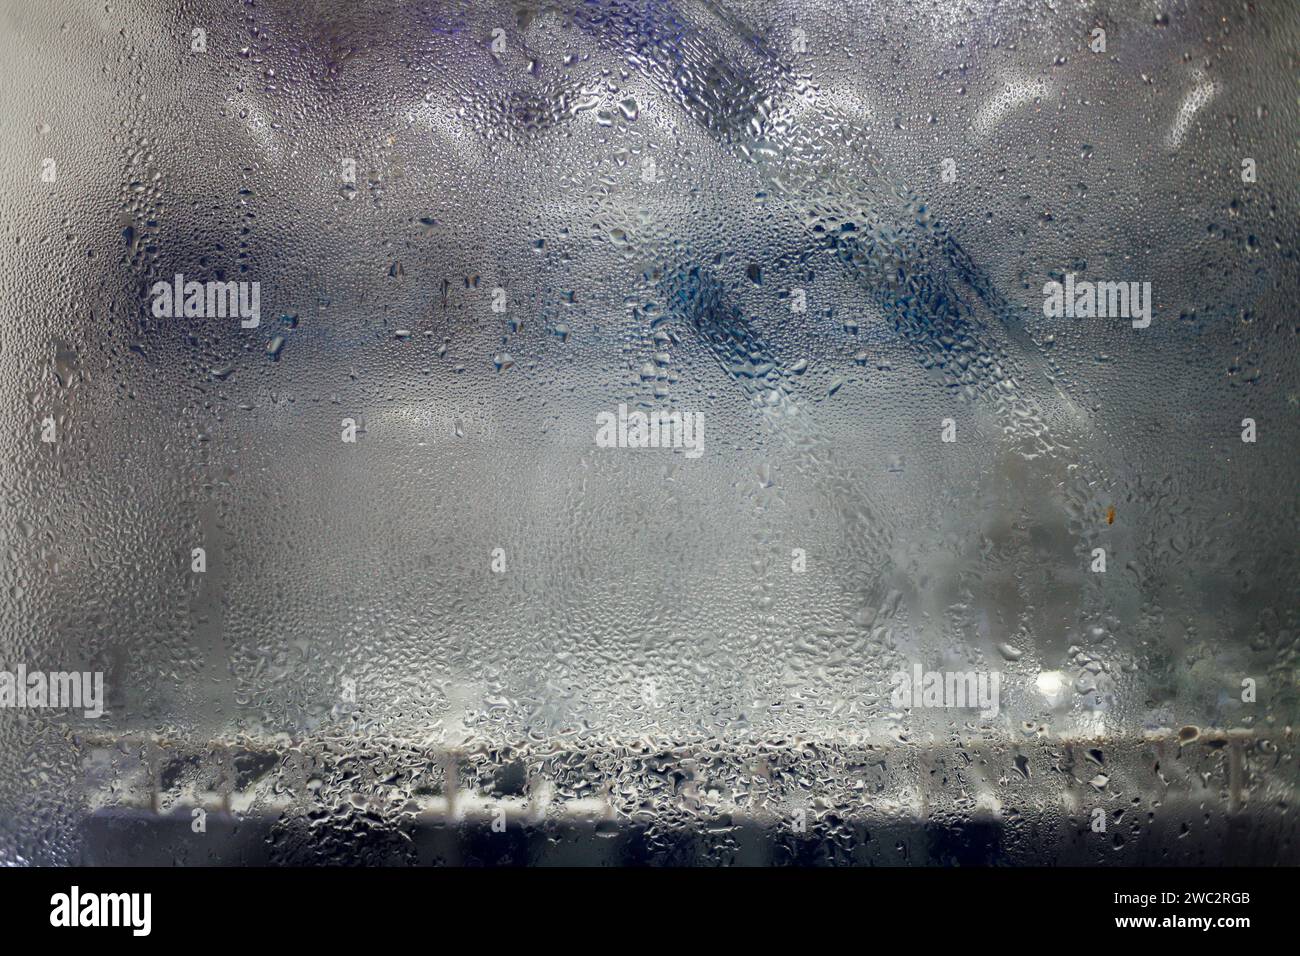 Gros plan de la condensation d'eau dans le verre du réfrigérateur. Réfrigérateur froid en verre dépoli Banque D'Images